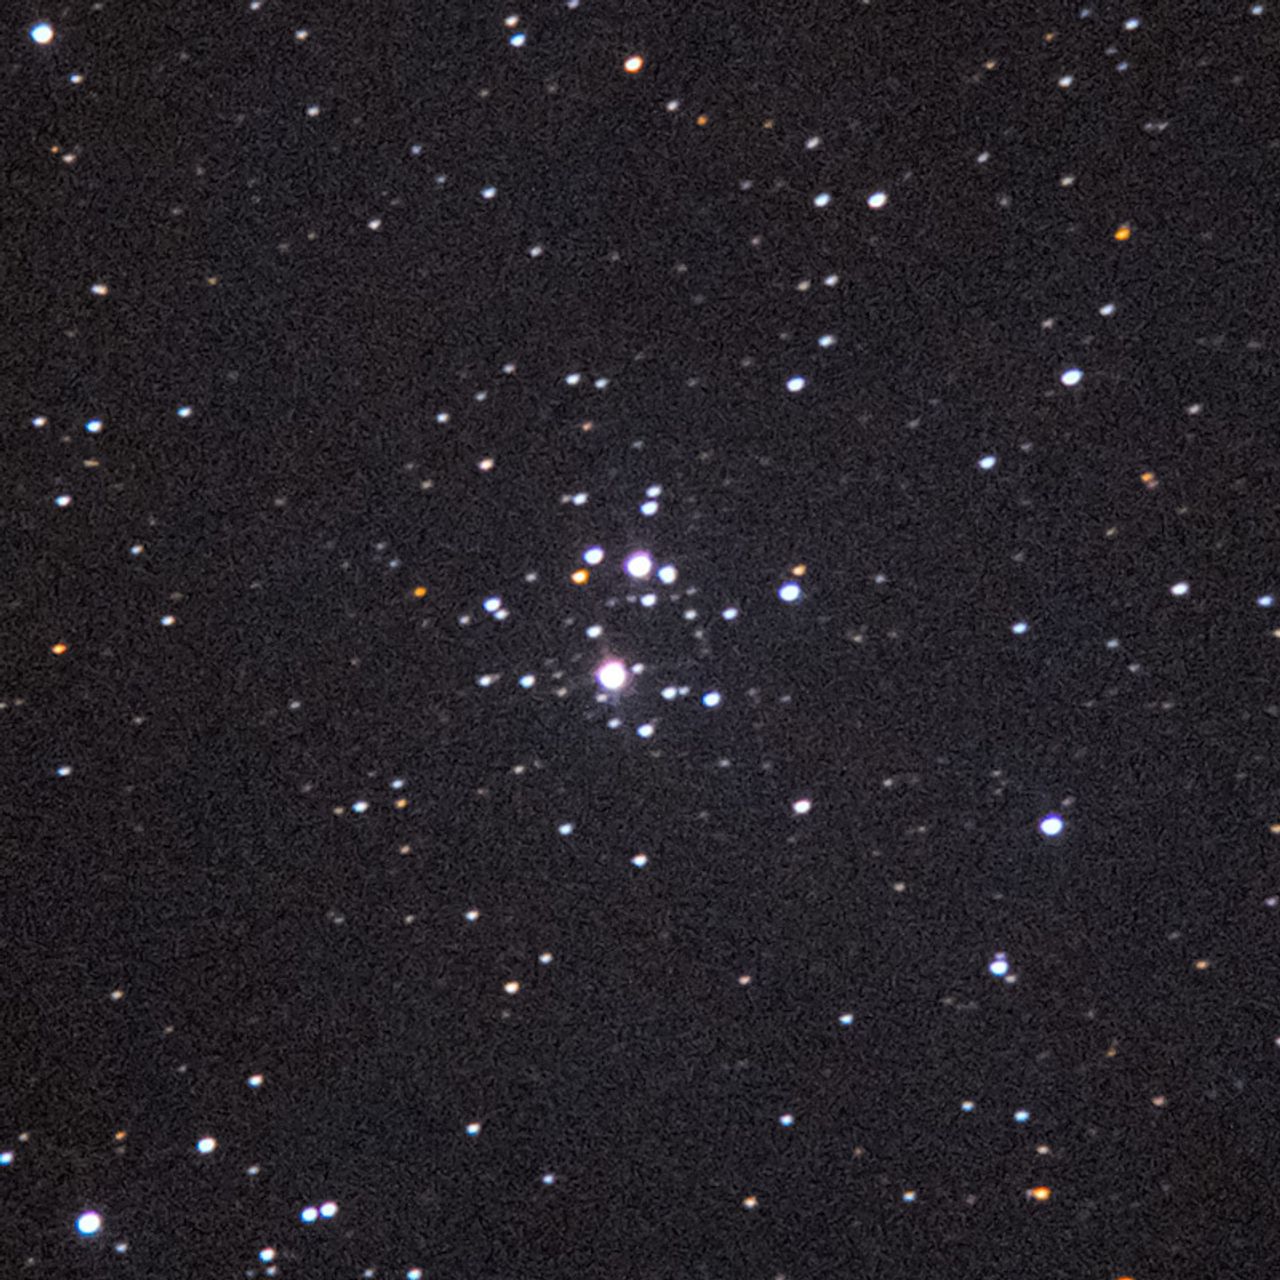 NGC2129